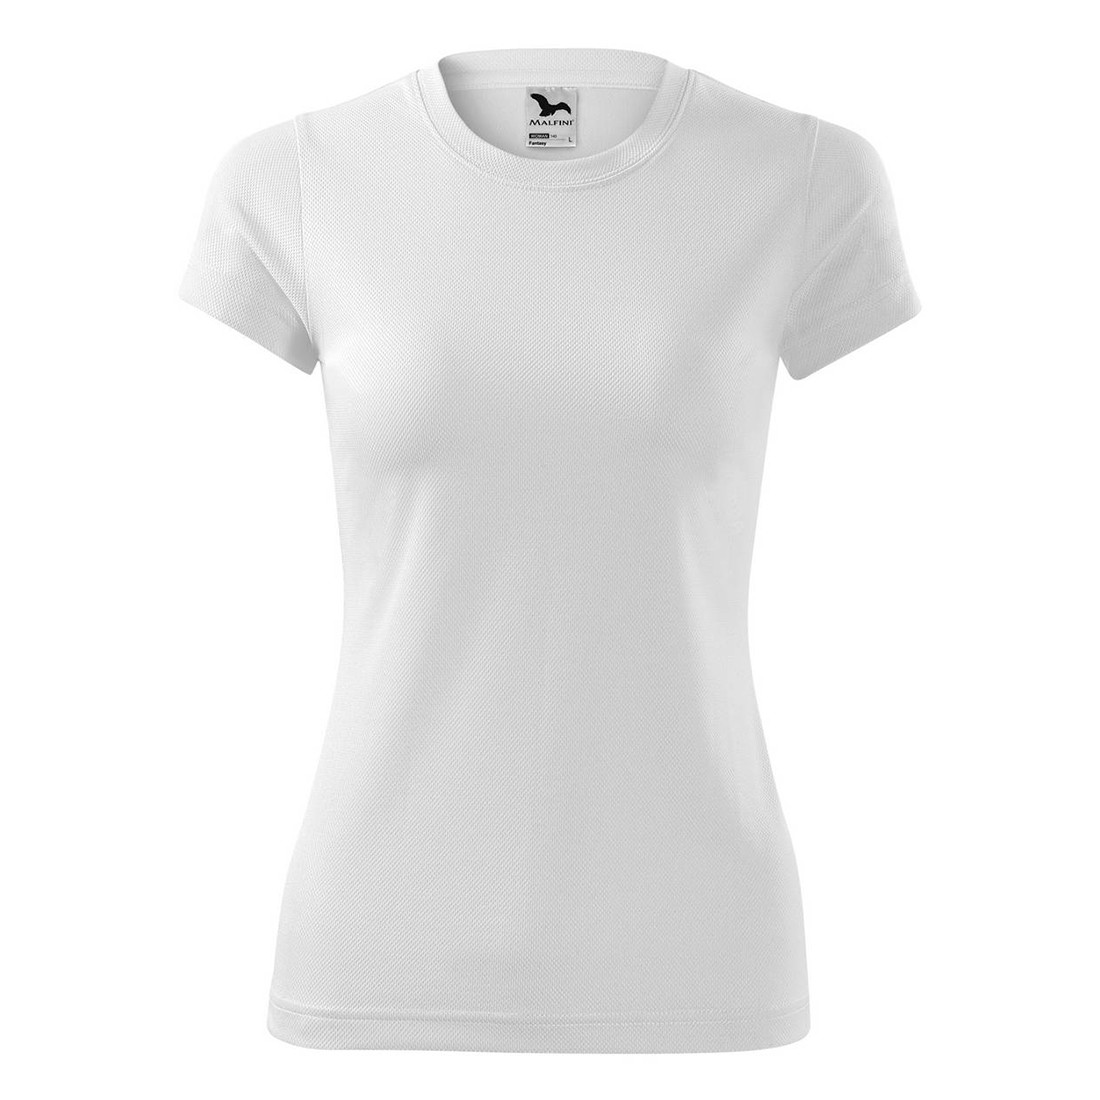 Tee-shirt femme FANTASY - Les vêtements de protection